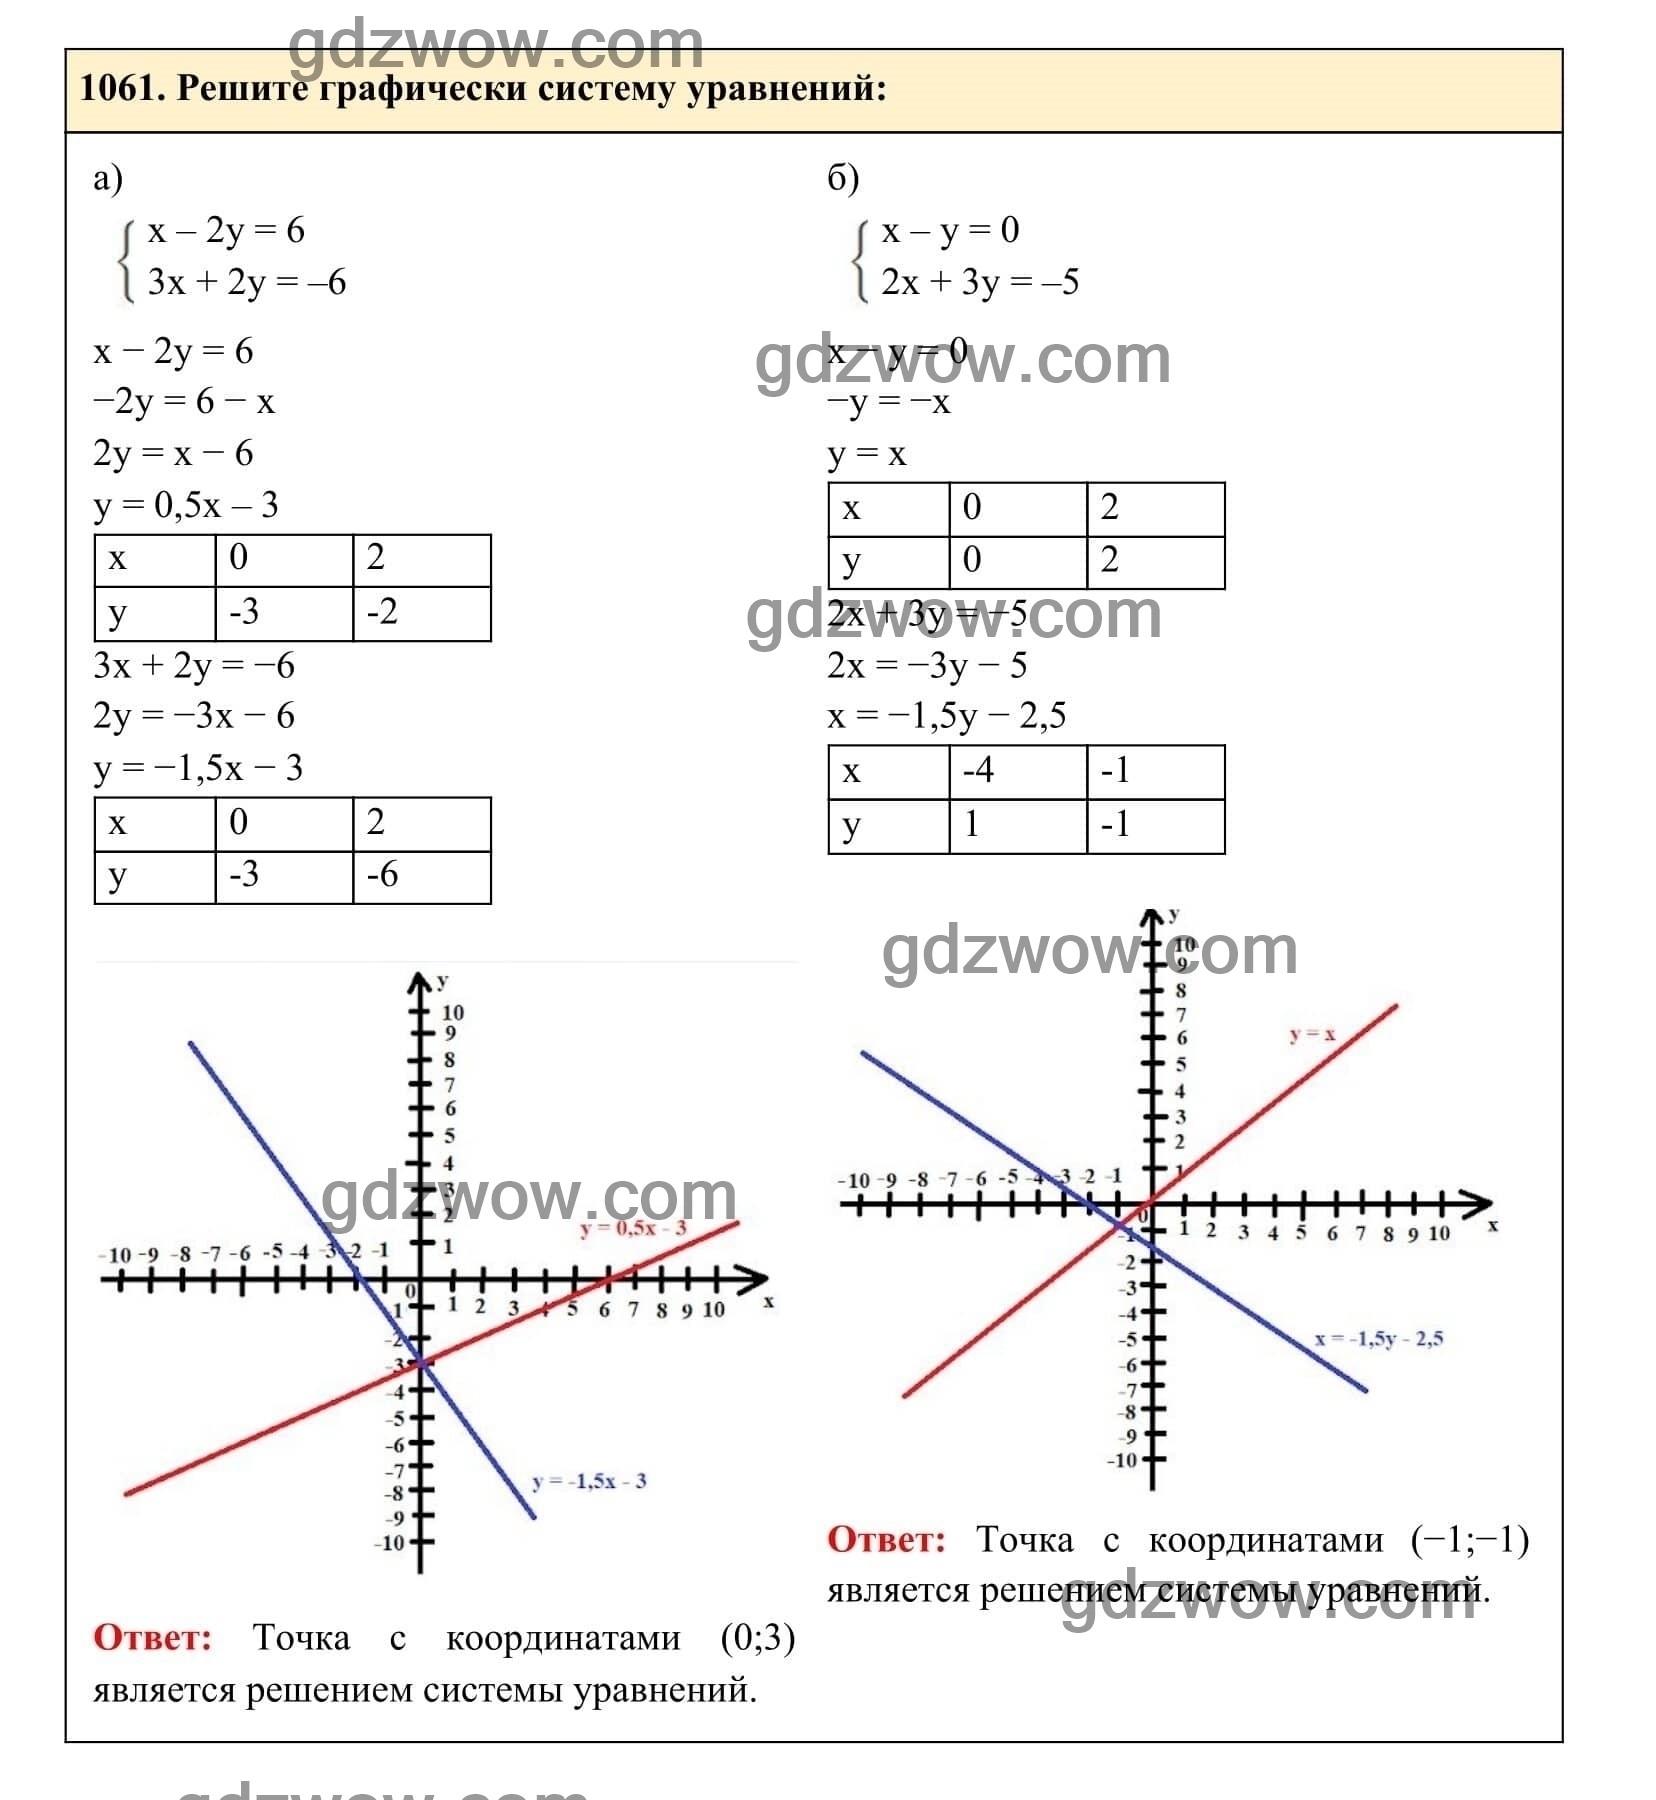 Упражнение 1061 - ГДЗ по Алгебре 7 класс Учебник Макарычев (решебник) - GDZwow